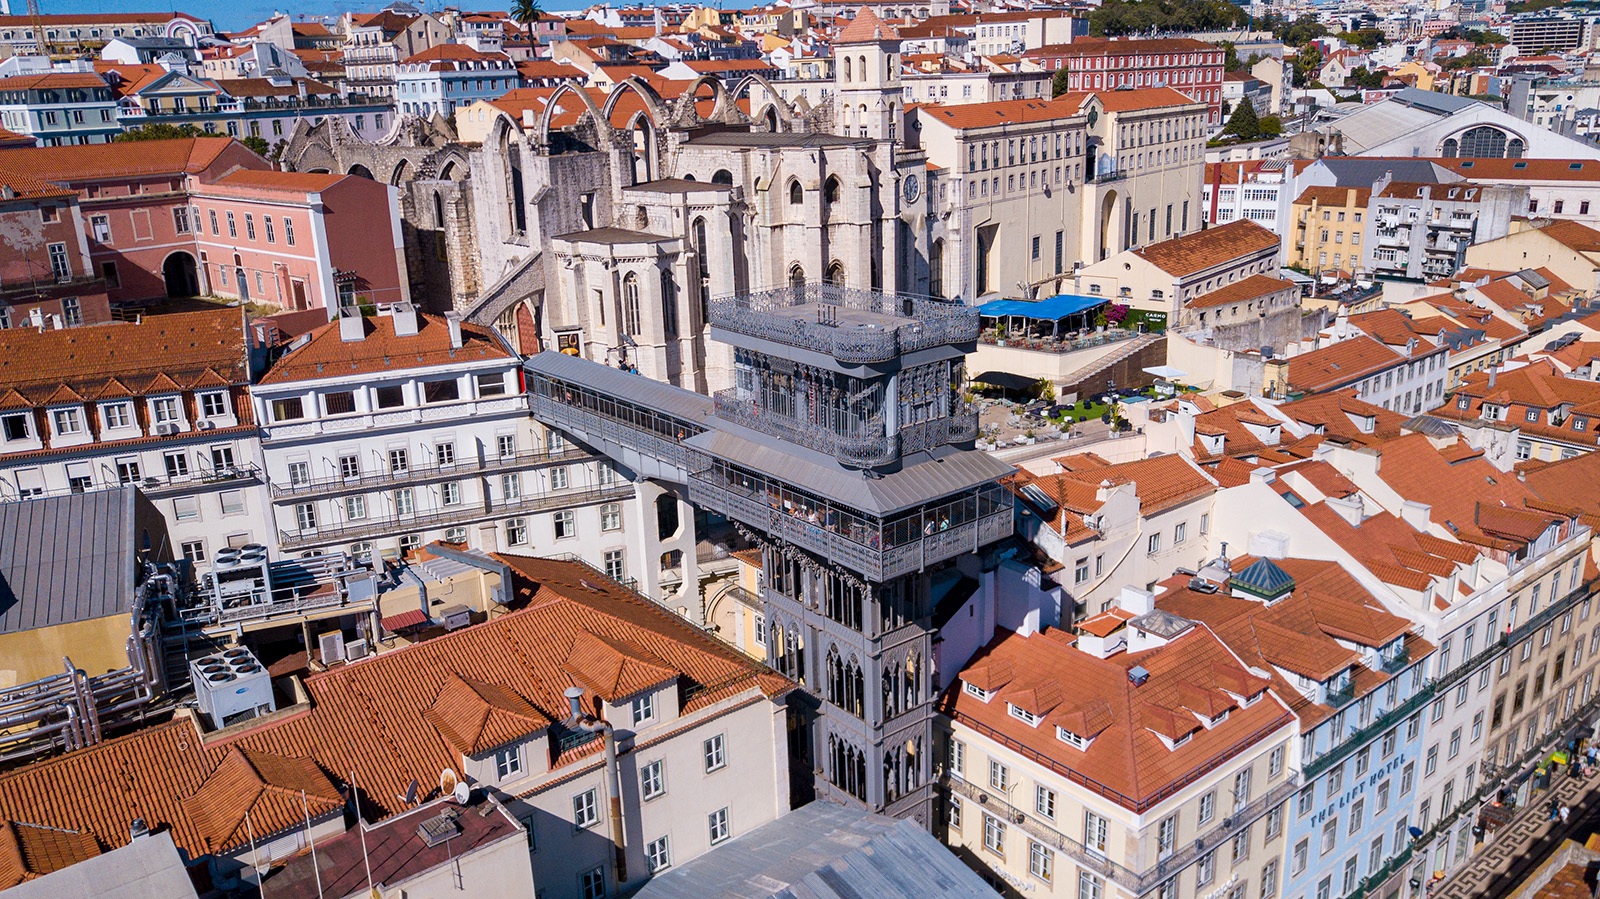 Elevador de Santa Justa em Lisboa Portugal com ruínas do Convento do Carmo ao fundo